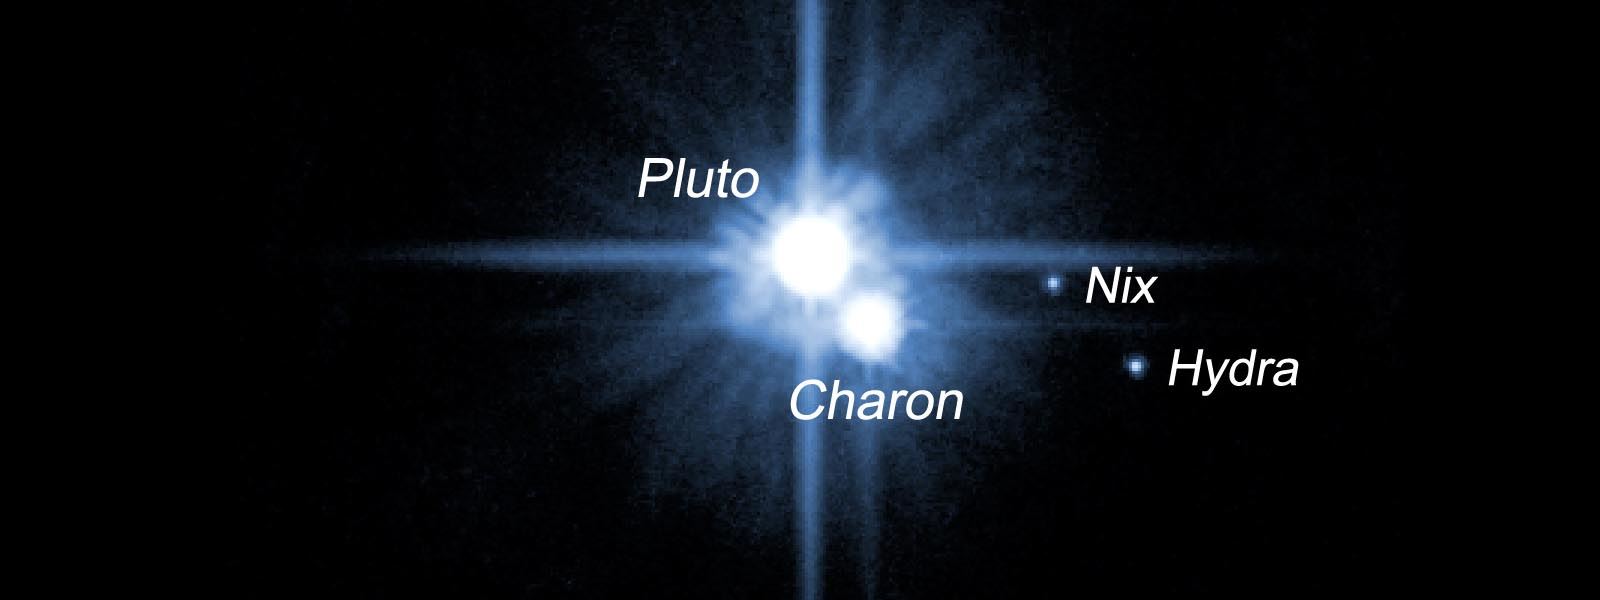 Dlaczego Hubble nie dał nam dokładnych zdjęć Plutona?